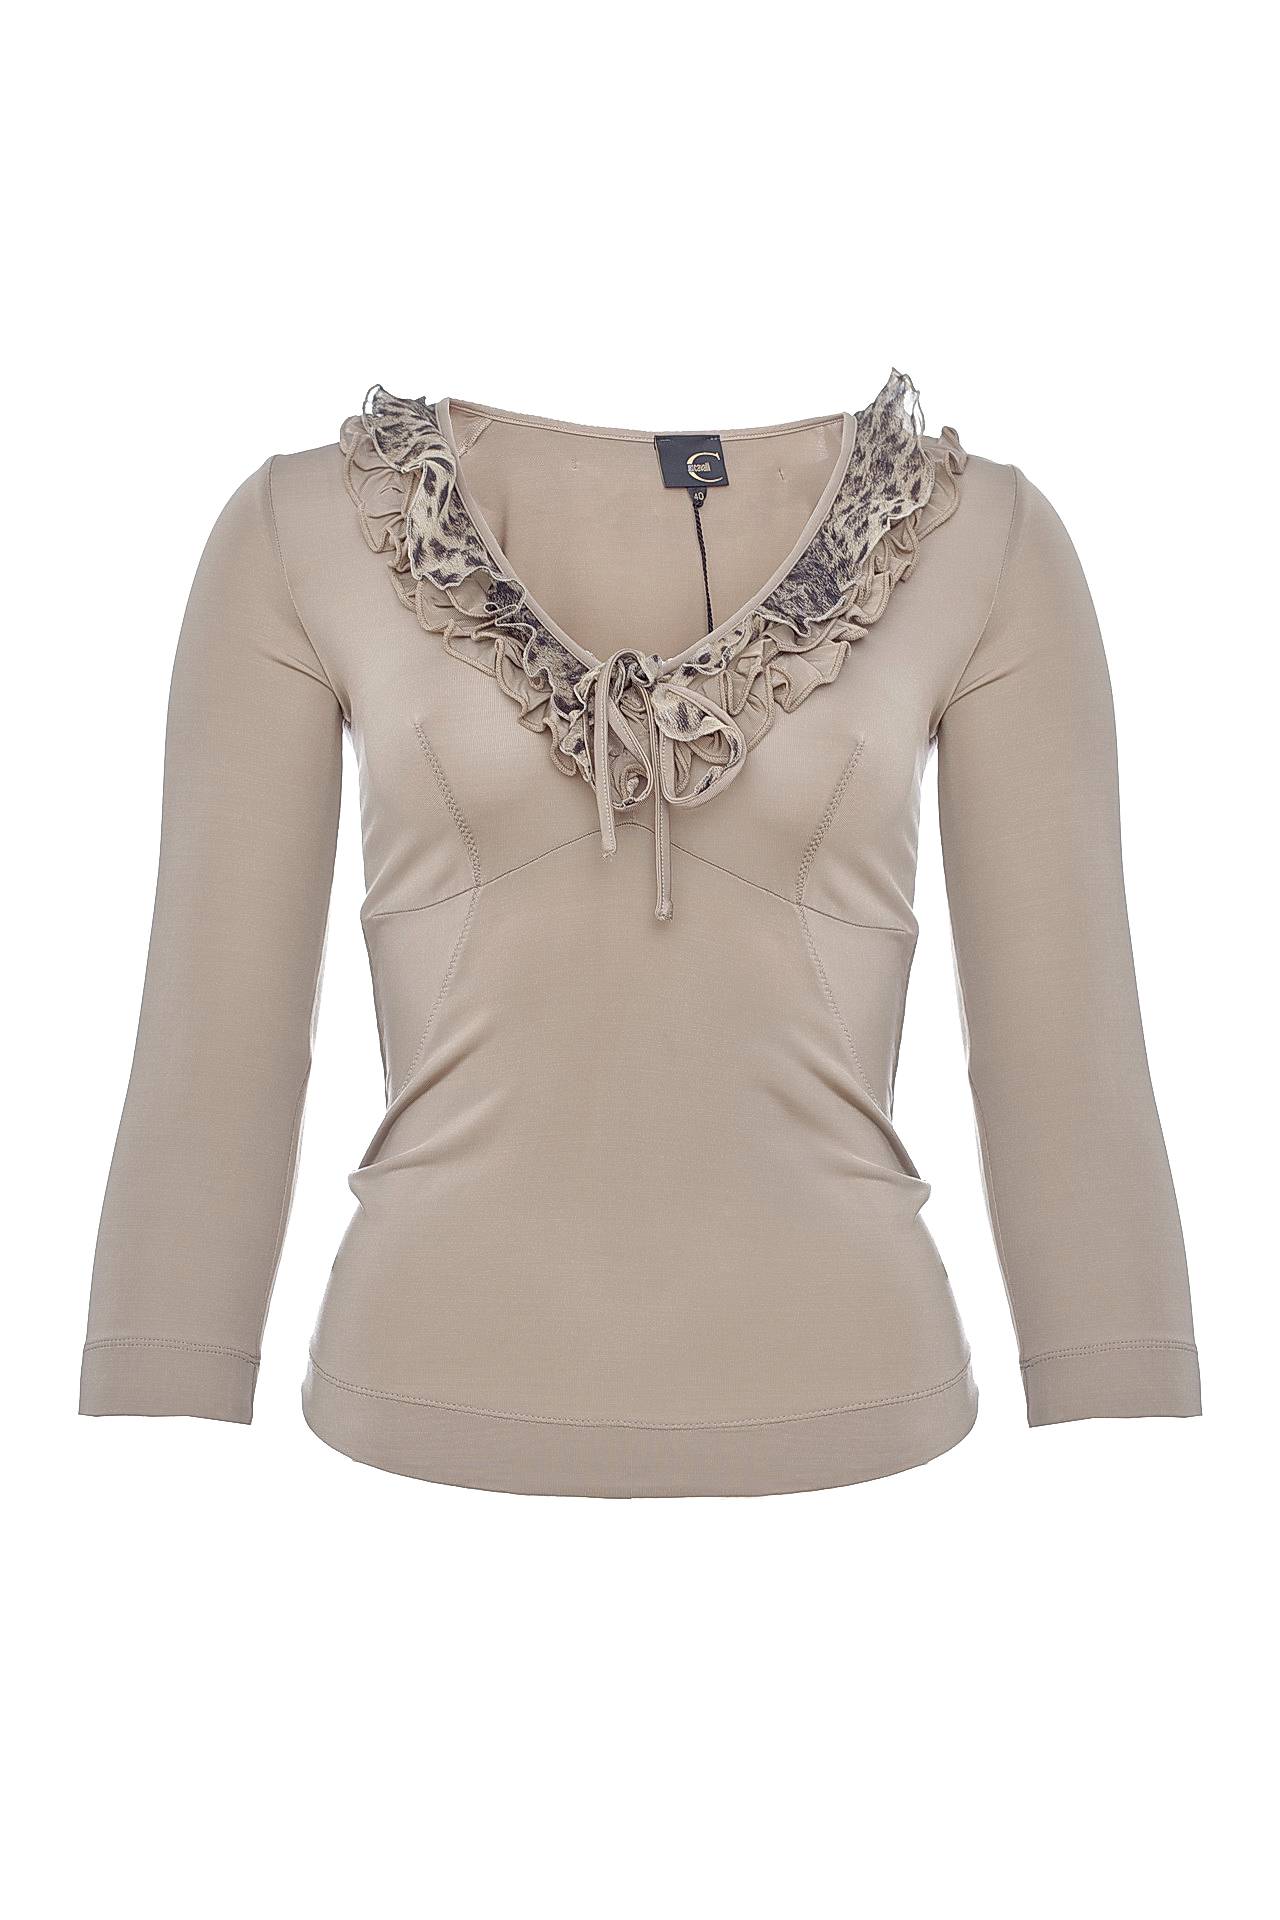 Одежда женская Блузка JUST CAVALLI (26OO675637444/00). Купить за 7400 руб.